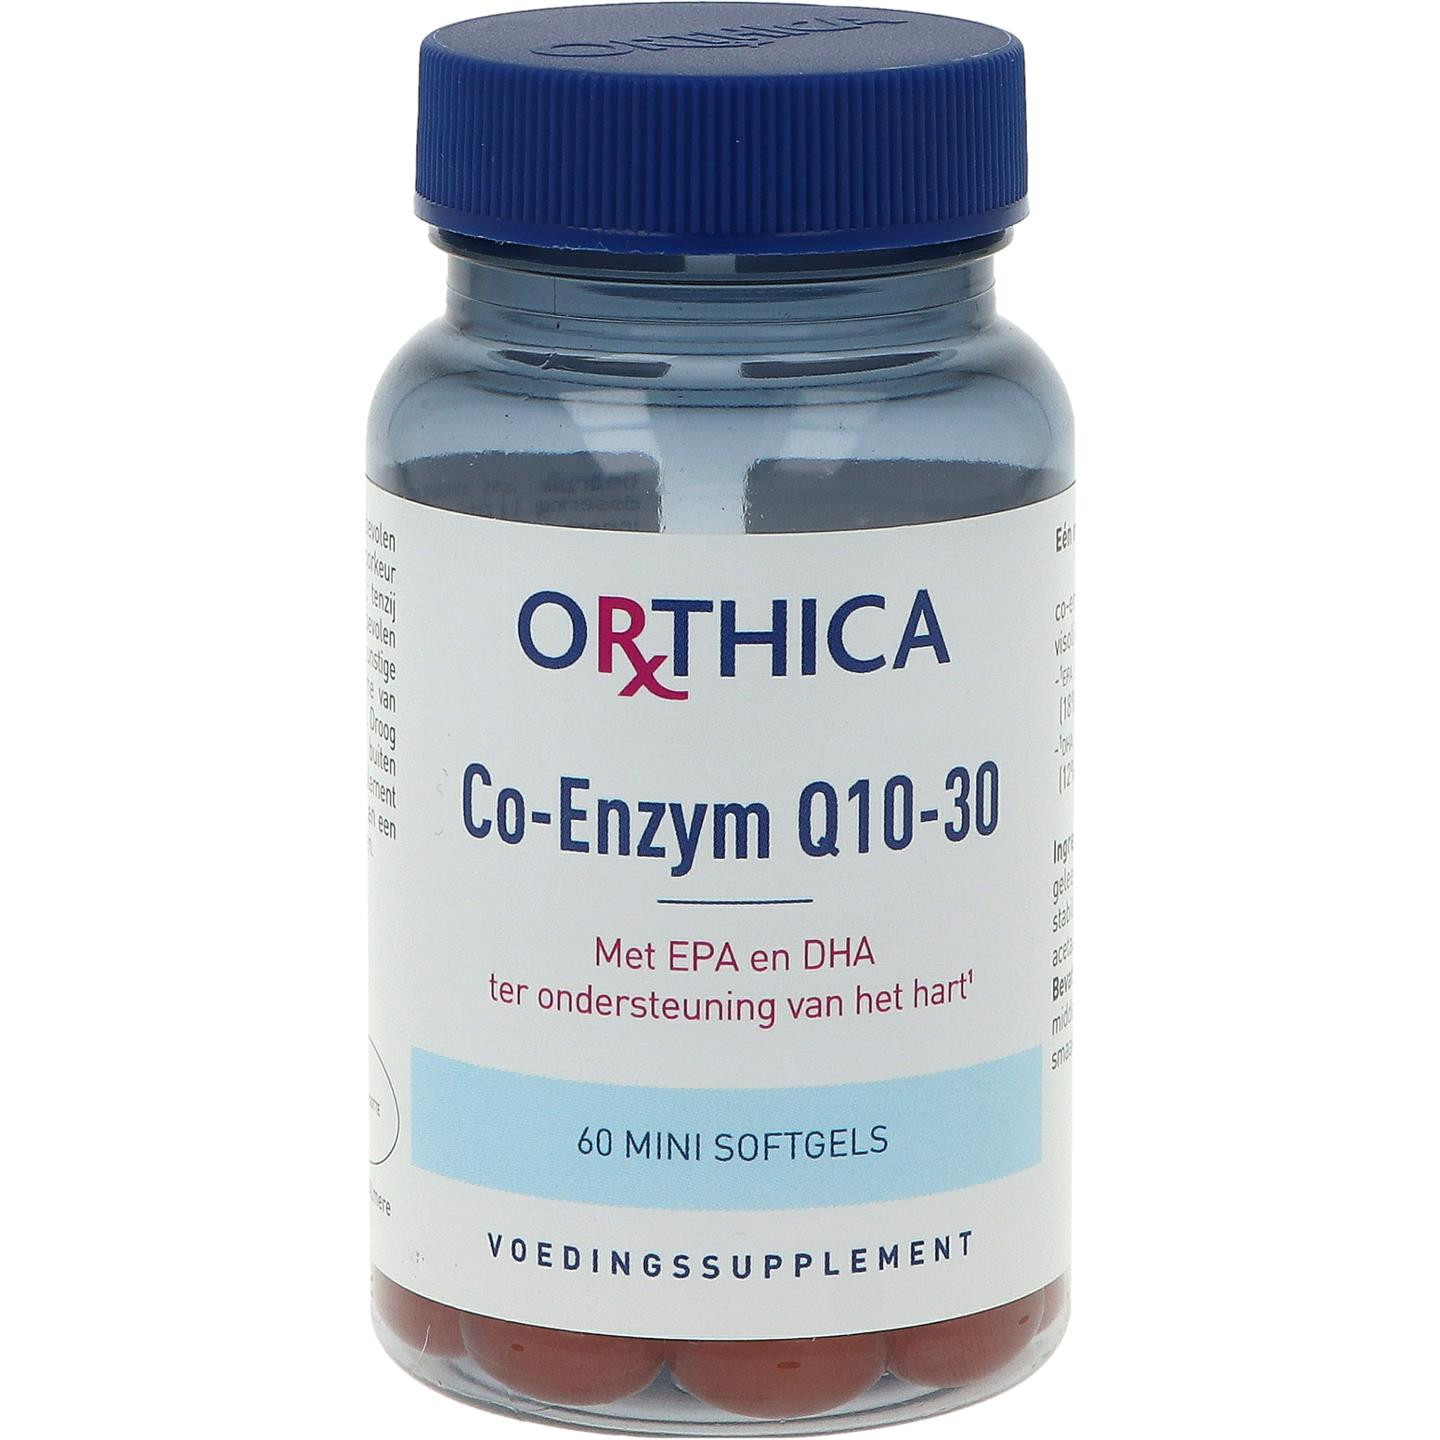 Co-enzym Q10-30